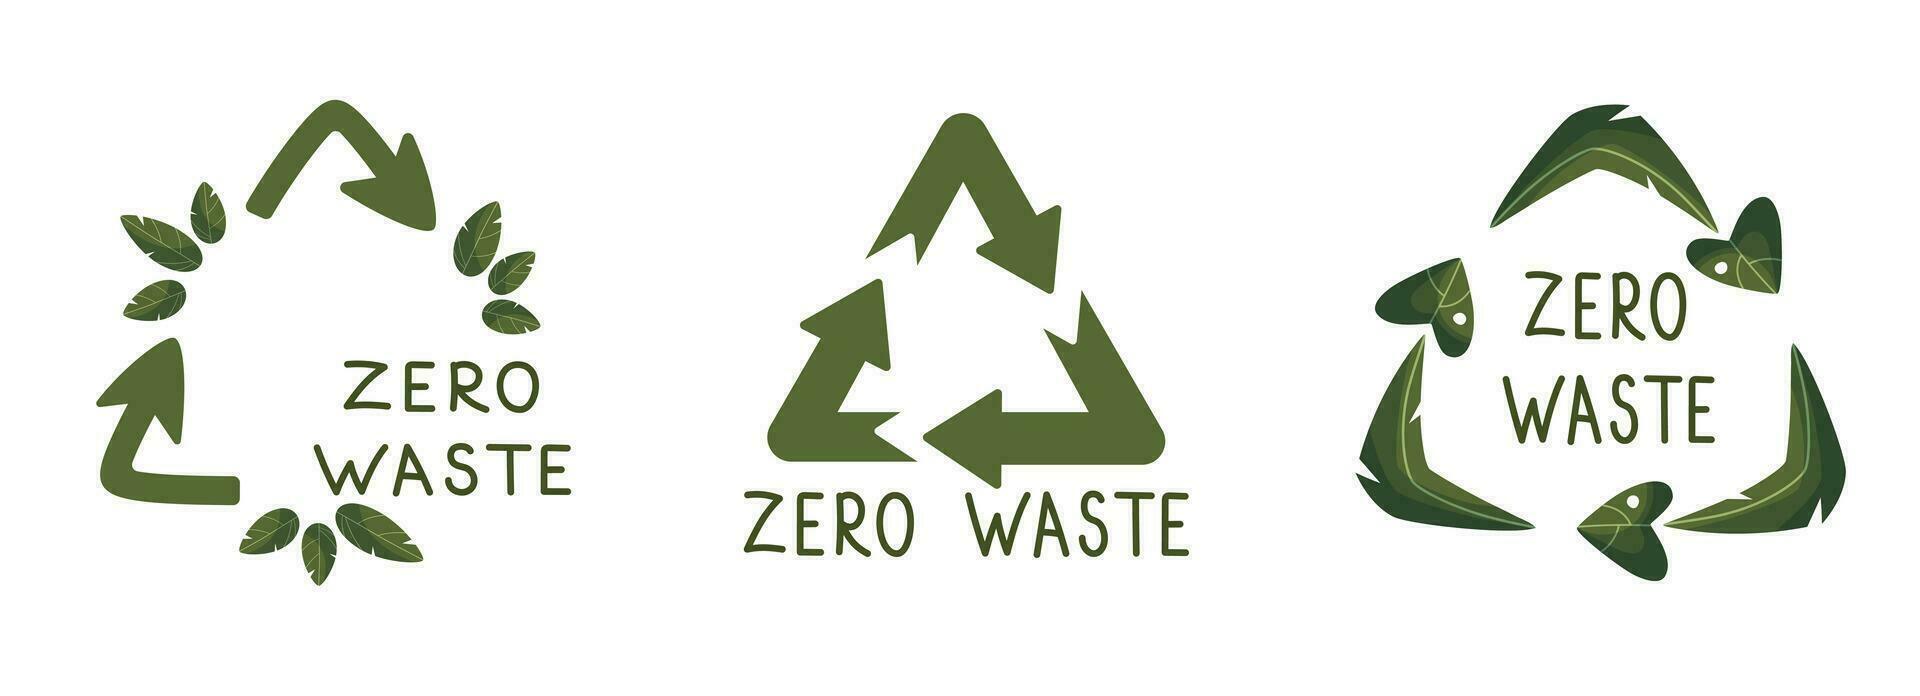 nul verspilling etiketten. groen eco vriendelijk label, verminderen verspilling en recycle icoon met fabriek bladeren vector set. Nee plastic ecologisch bescherming logo met groen